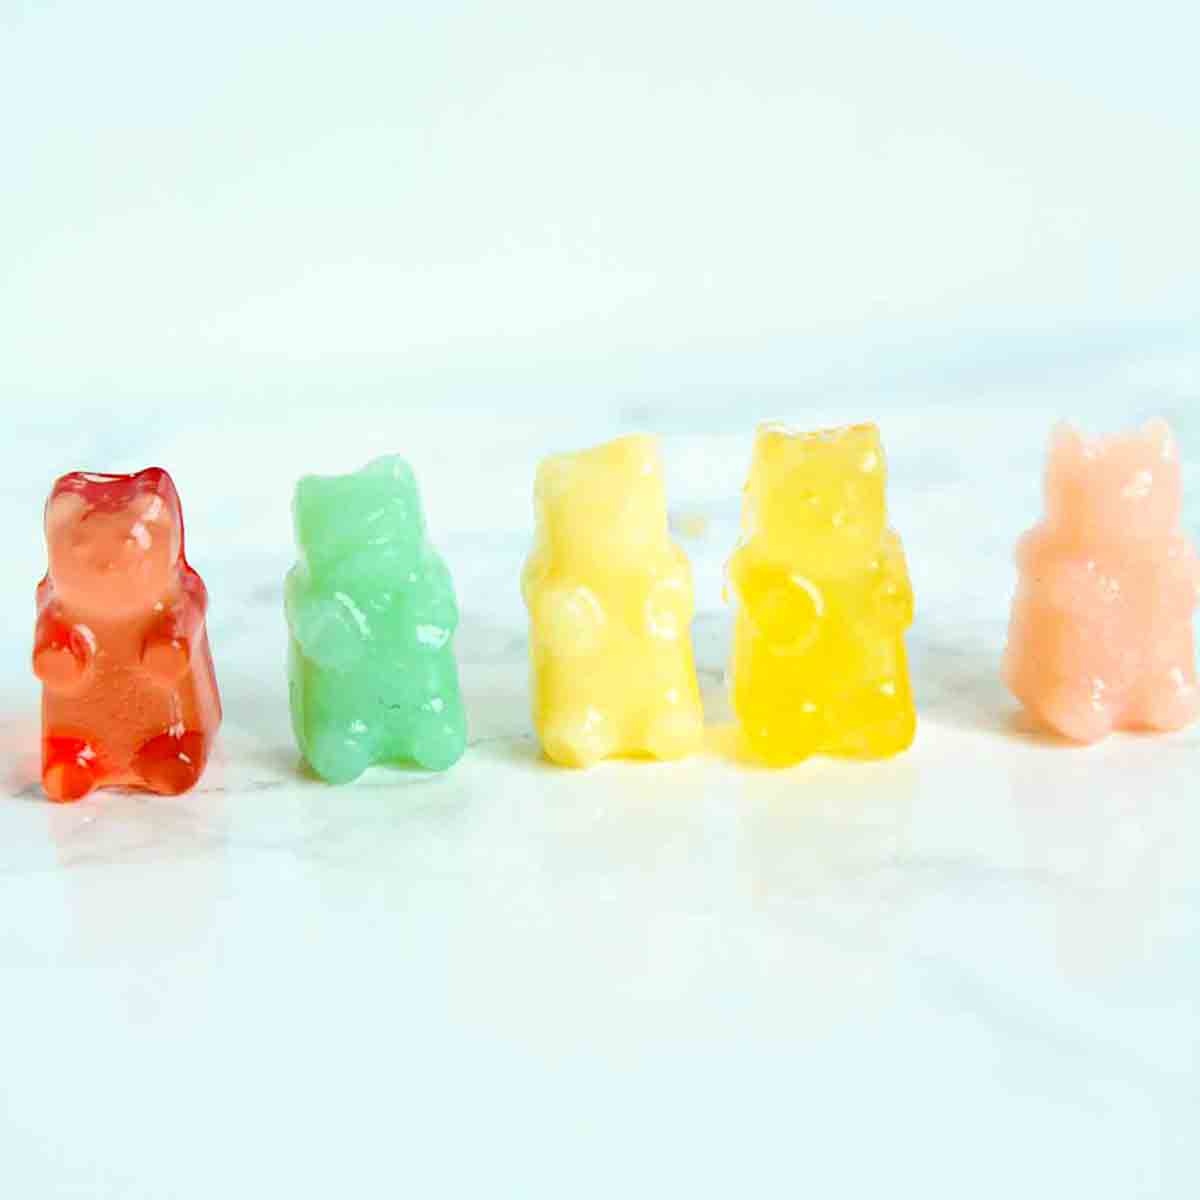 5 Vegan Gummy Bears